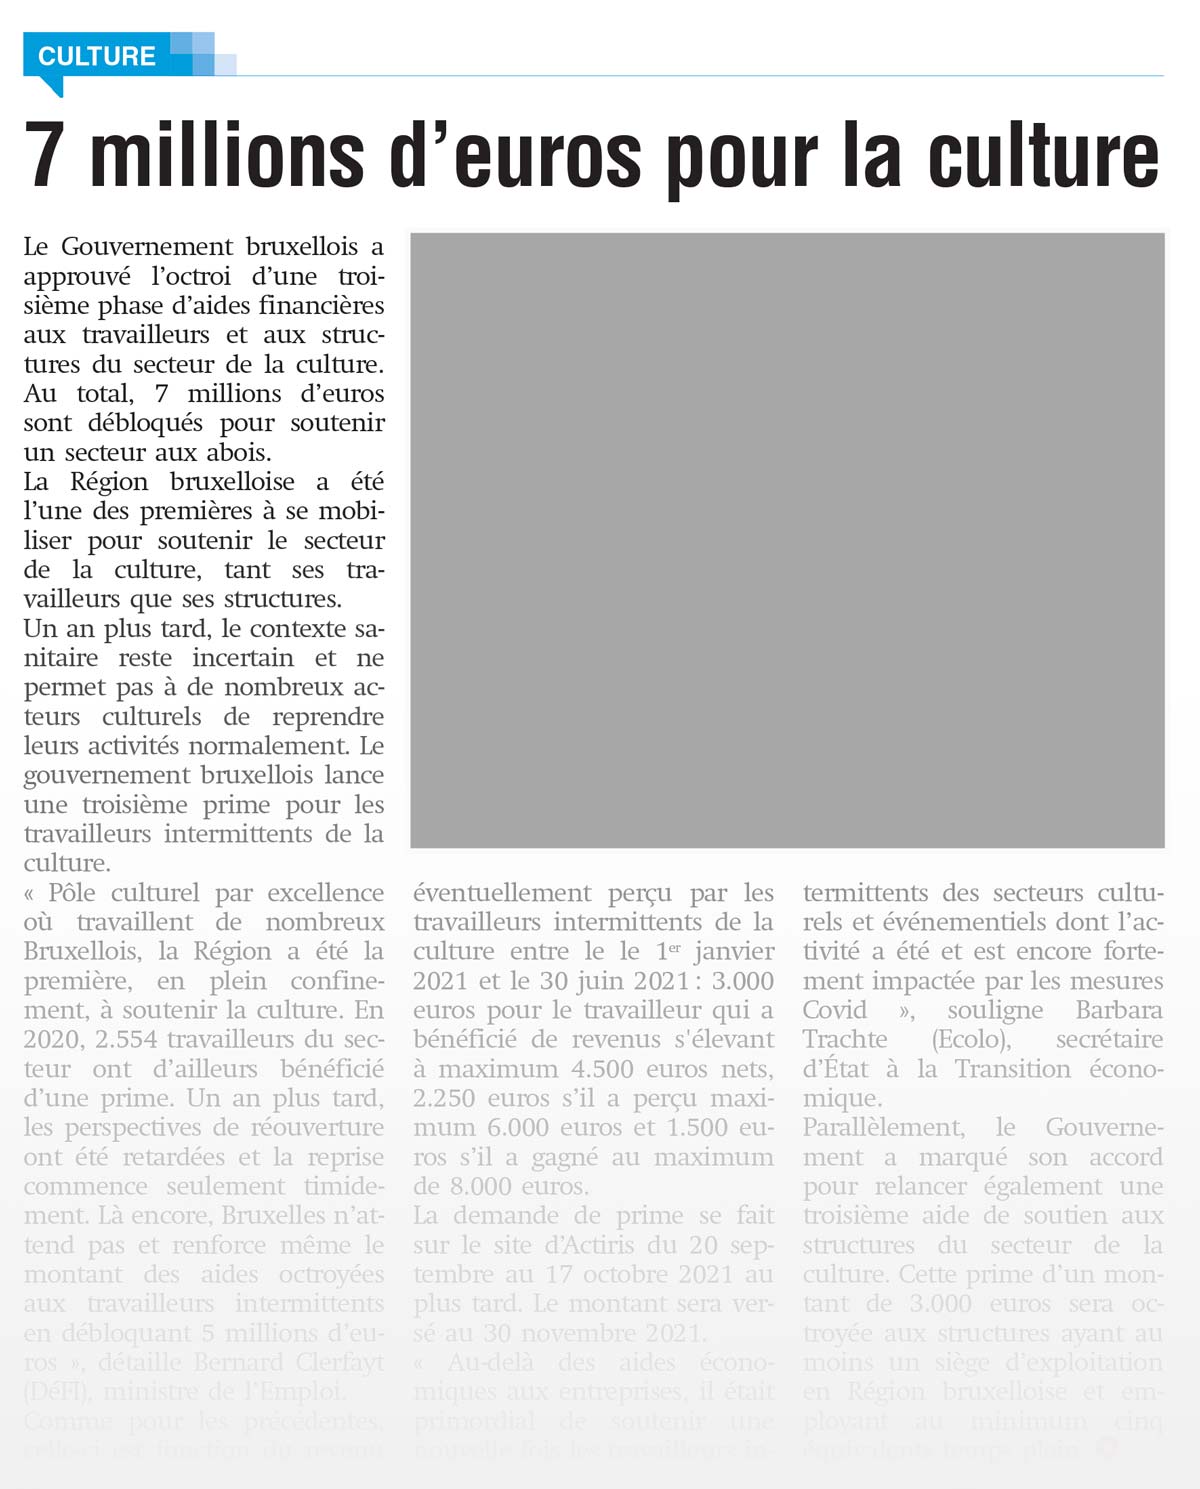 7 millions d'euros pour la culture